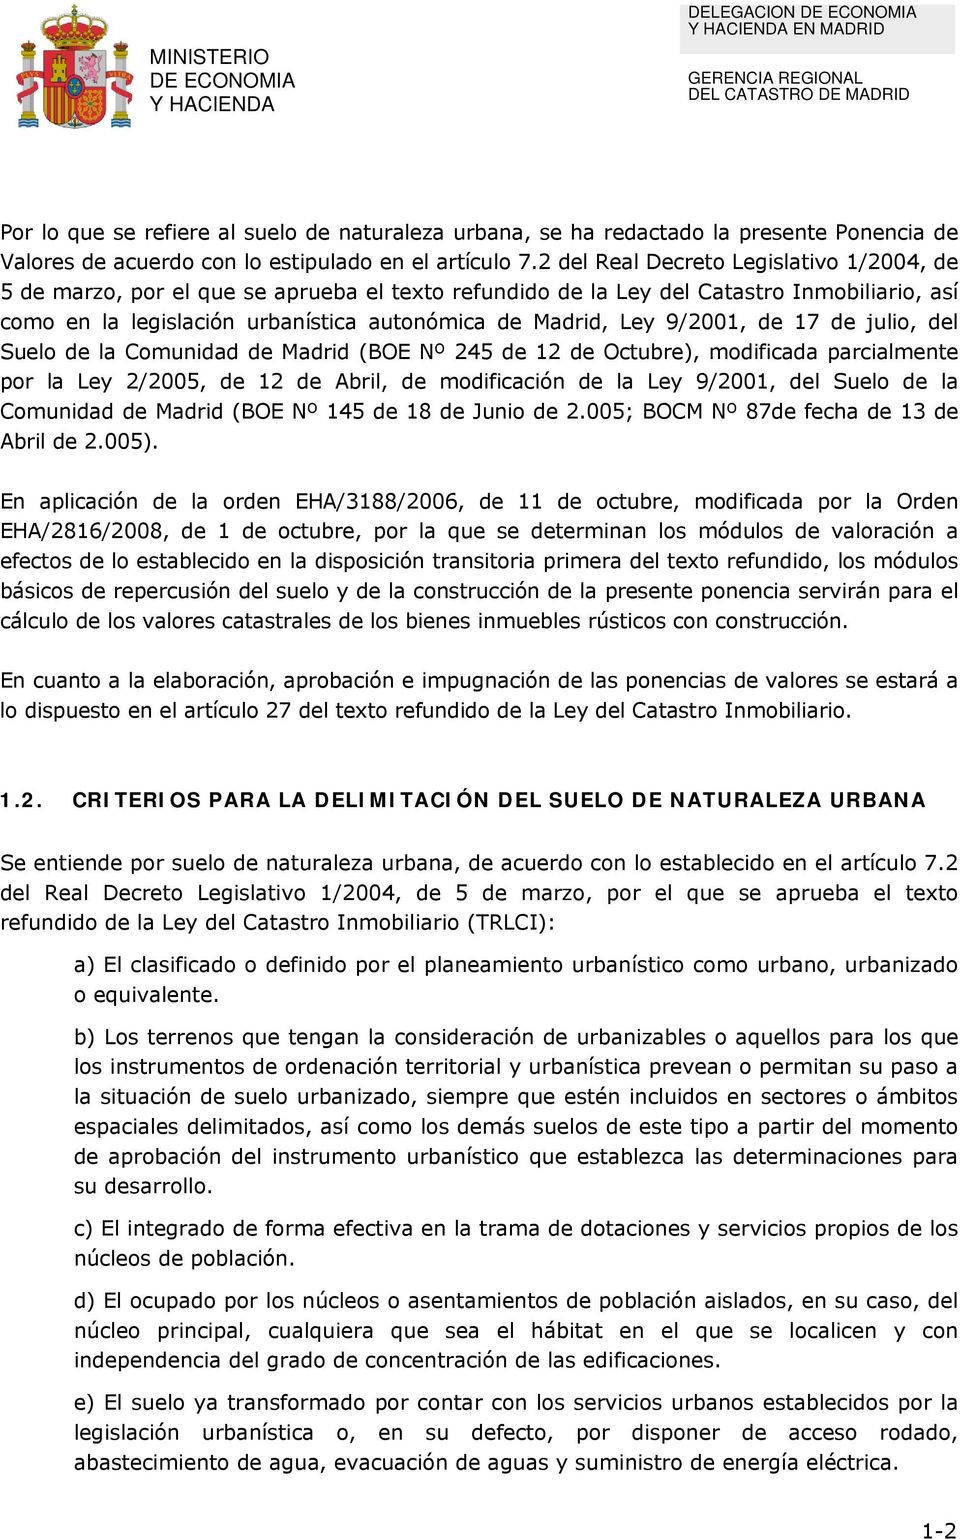 9/2001, de 17 de julio, del Suelo de la Comunidad de Madrid (BOE Nº 245 de 12 de Octubre), modificada parcialmente por la Ley 2/2005, de 12 de Abril, de modificación de la Ley 9/2001, del Suelo de la